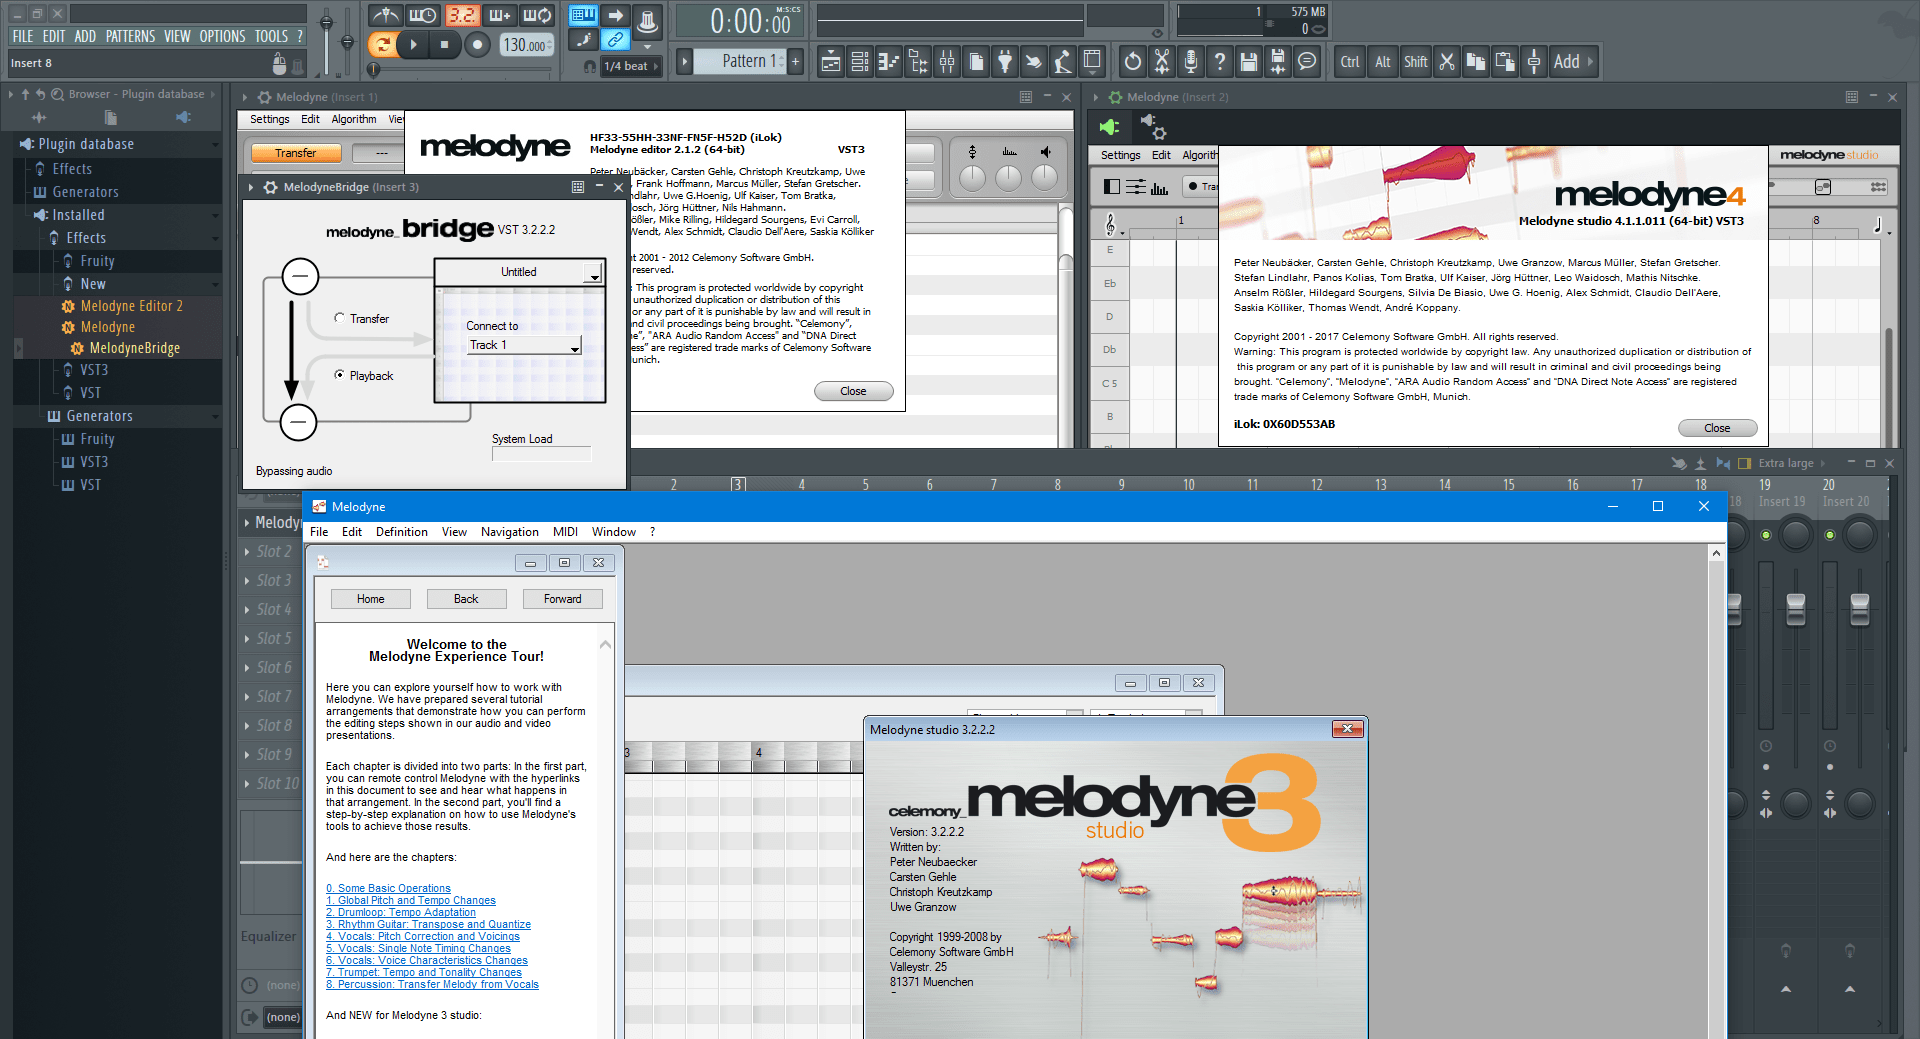 melodyne studio vs editor